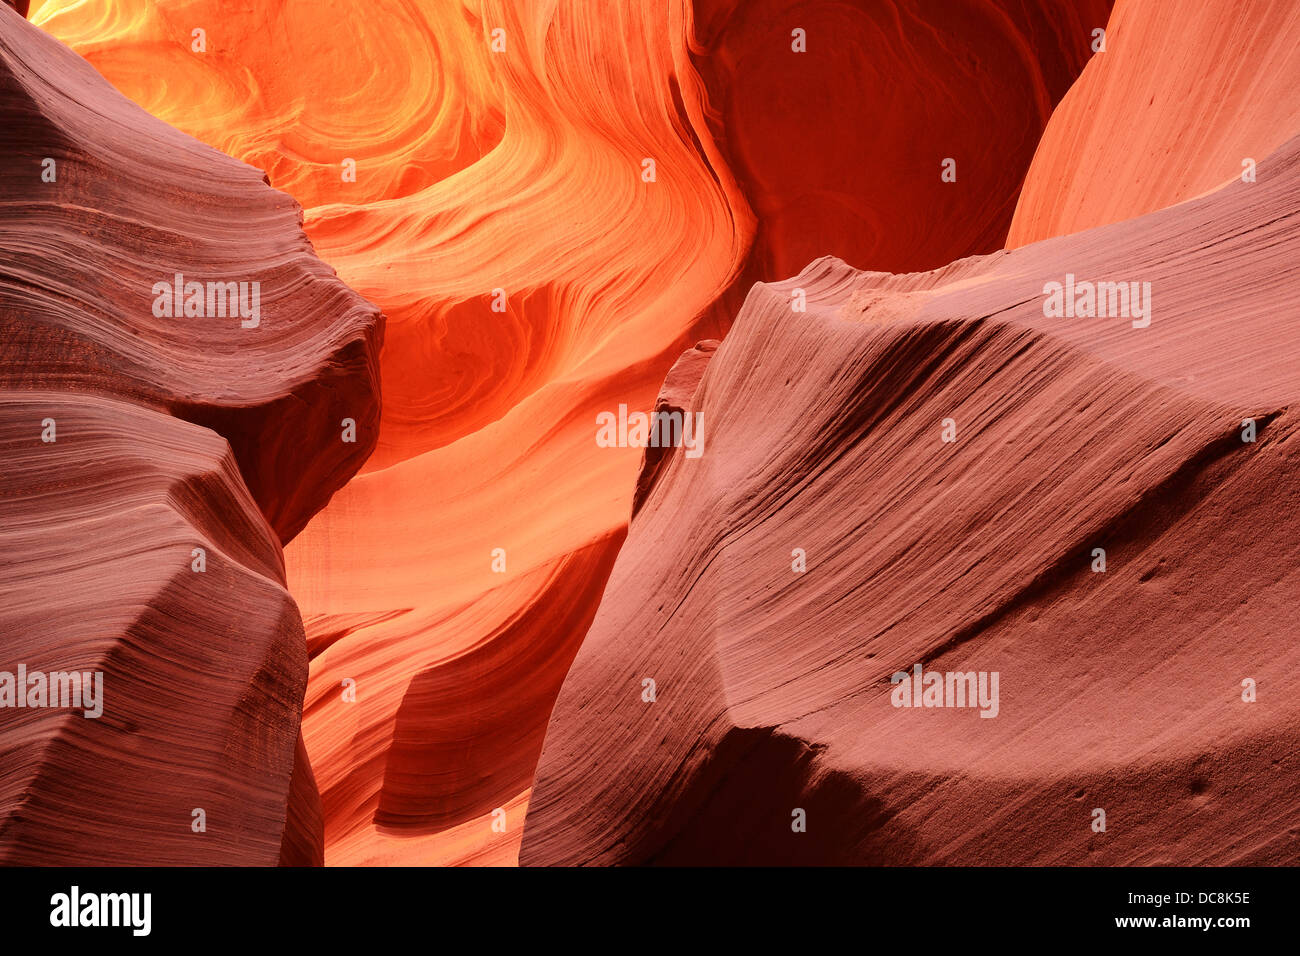 Schöne abstrakte natürlichen Muster der Lower Antelope Canyon, eine berühmte Slot Canyon in der Nähe von Page, Arizona, USA Stockfoto